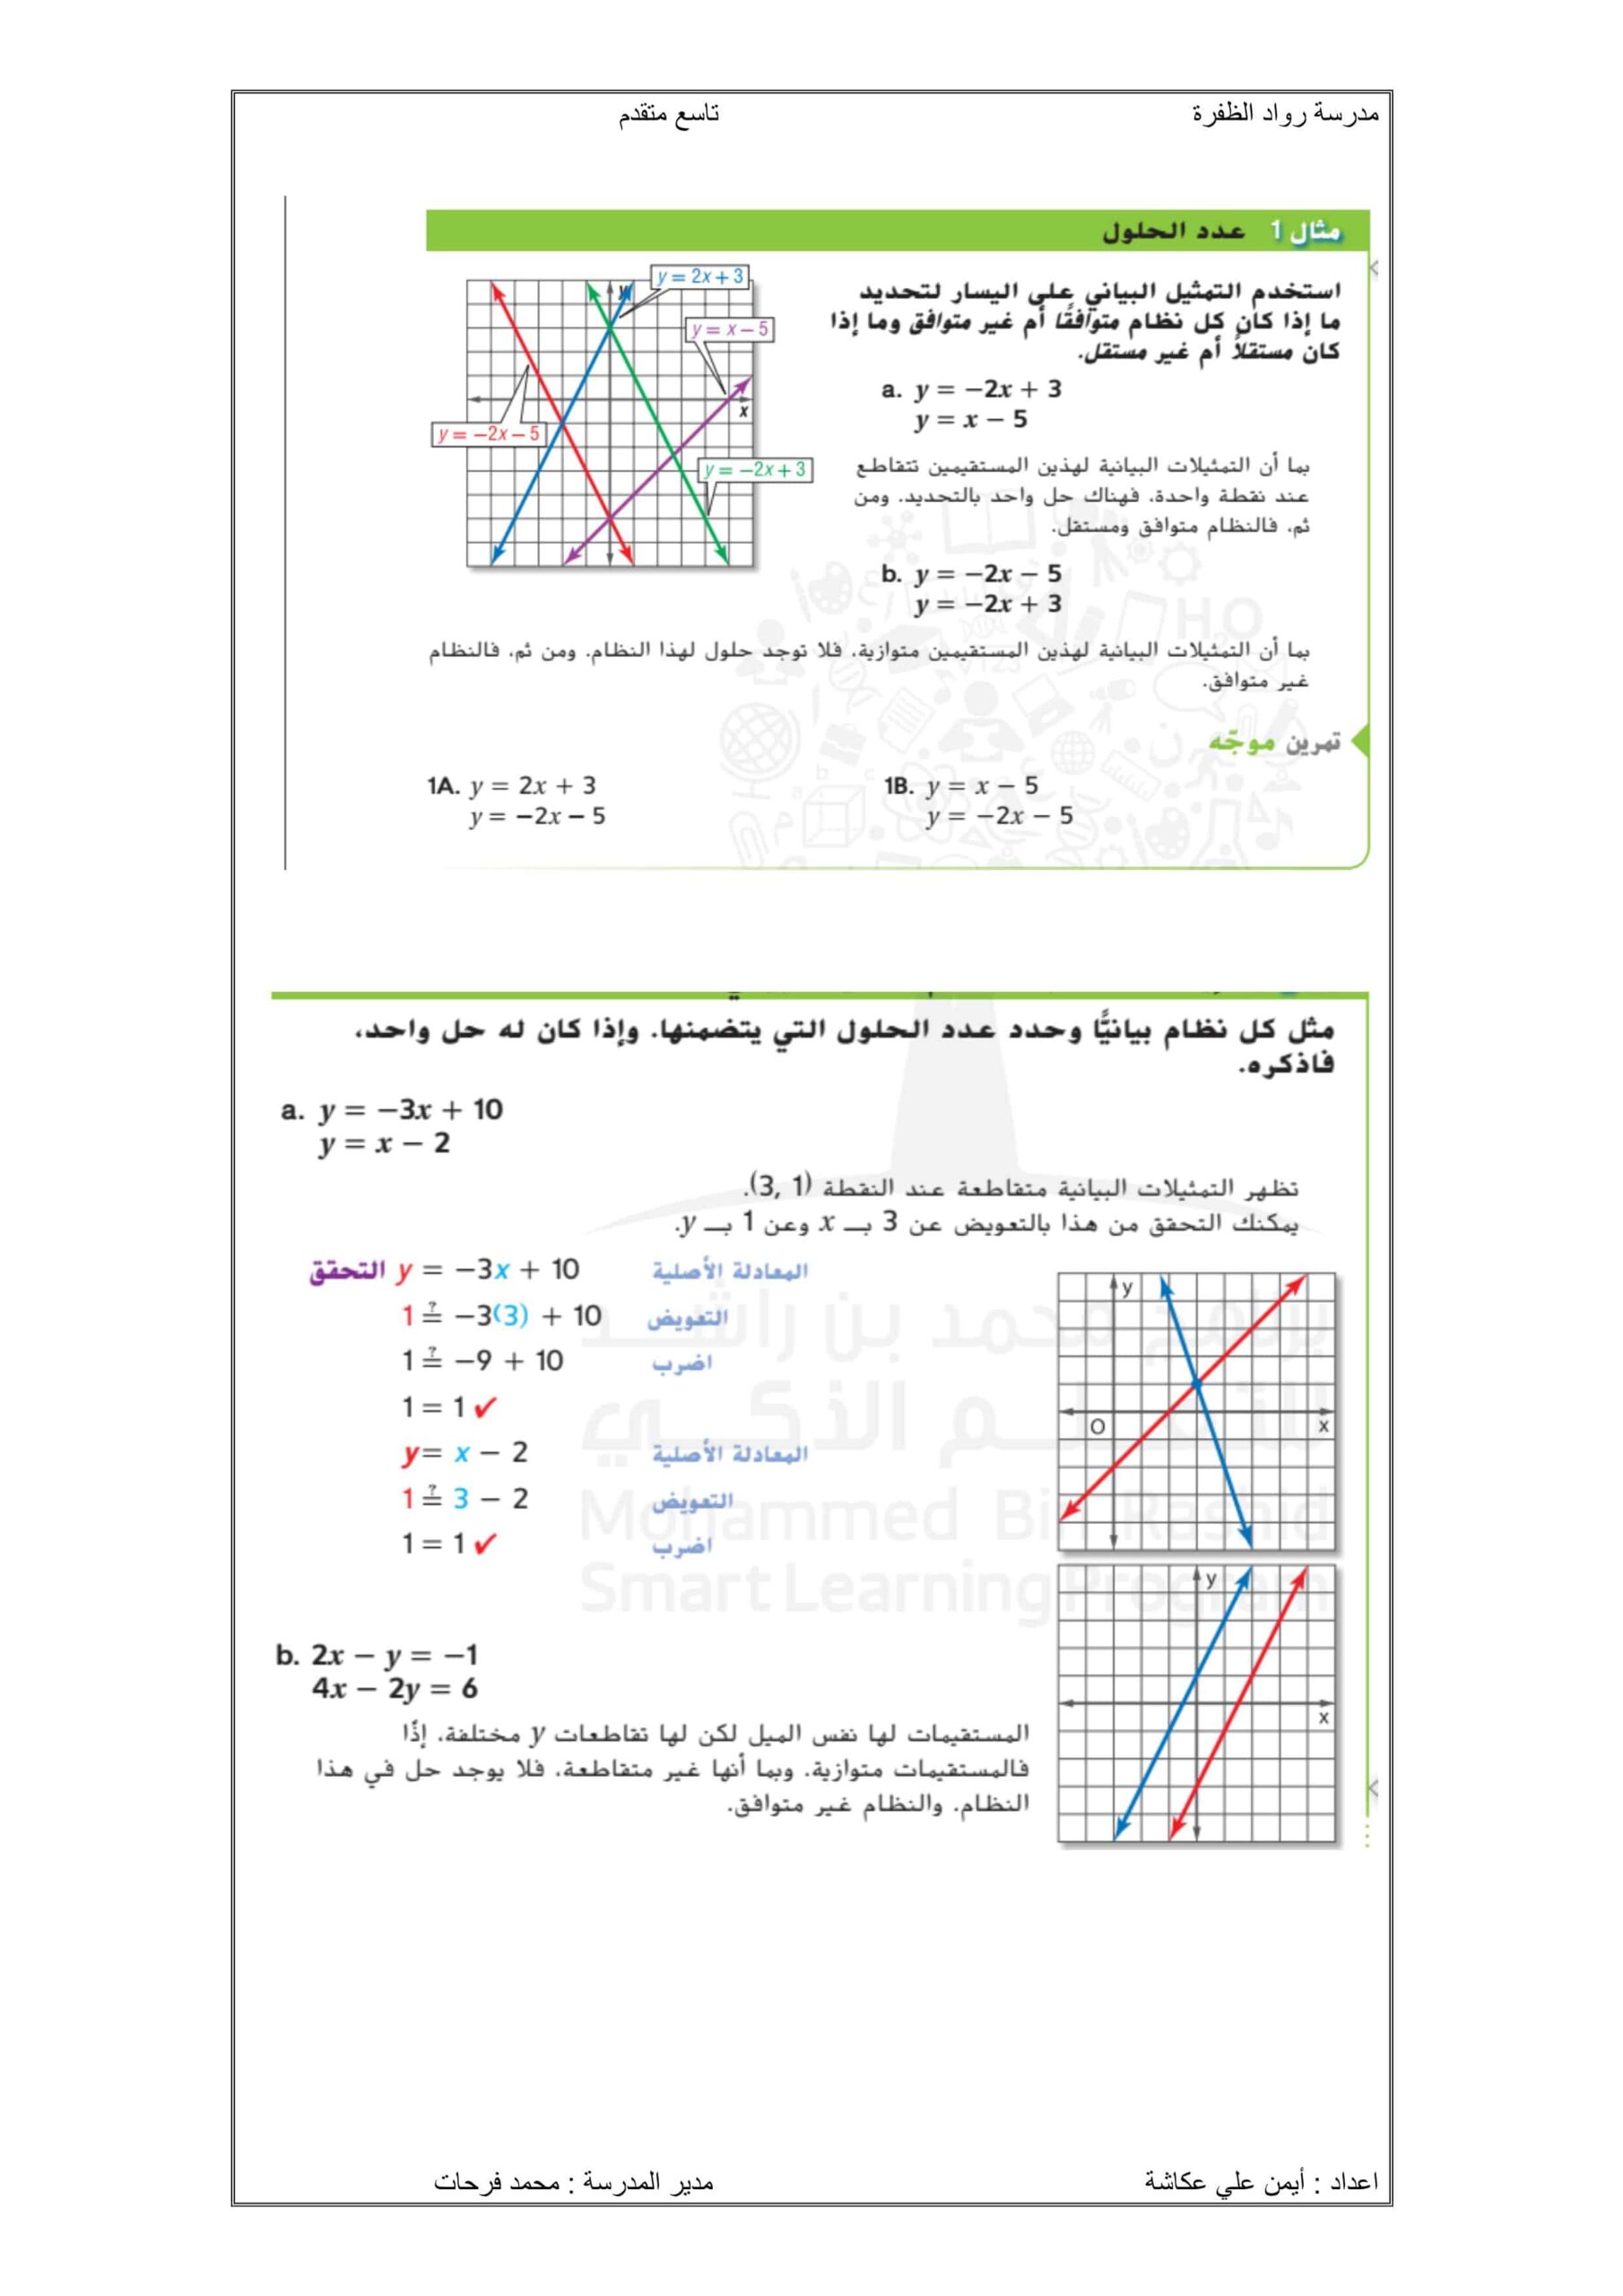 أوراق عمل هيكلة الامتحان الرياضيات المتكاملة الصف التاسع متقدم 